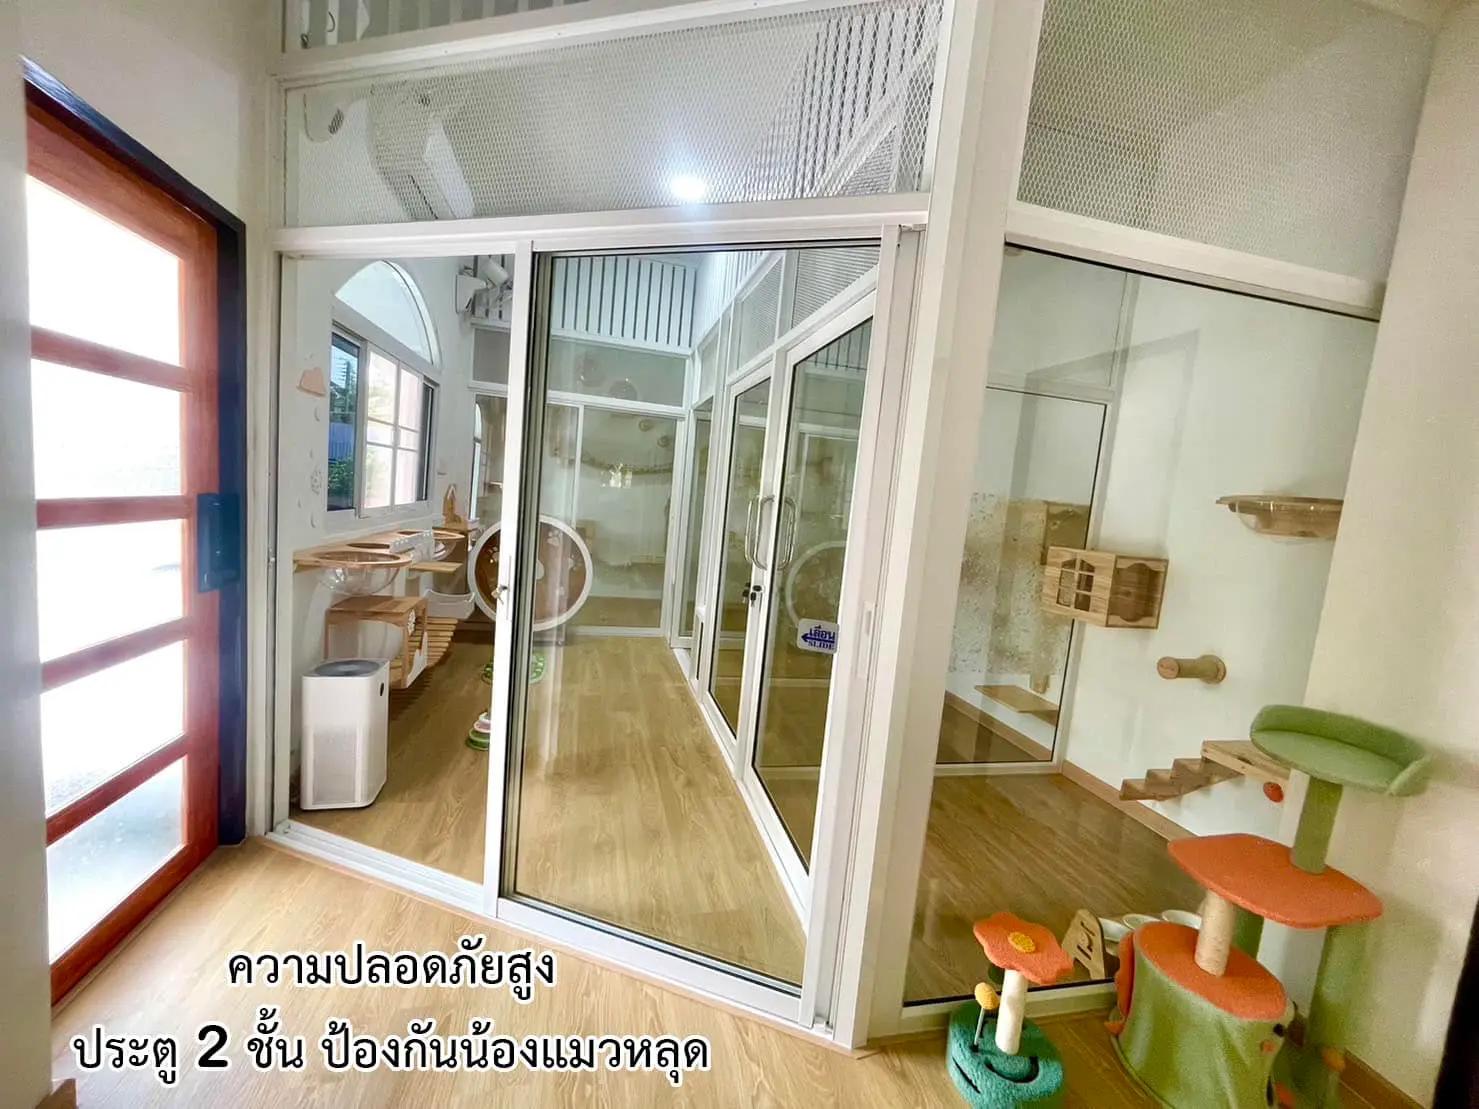 โรงแรมแมวเชียงใหม่ An-An Cat Hotel Chiangmai